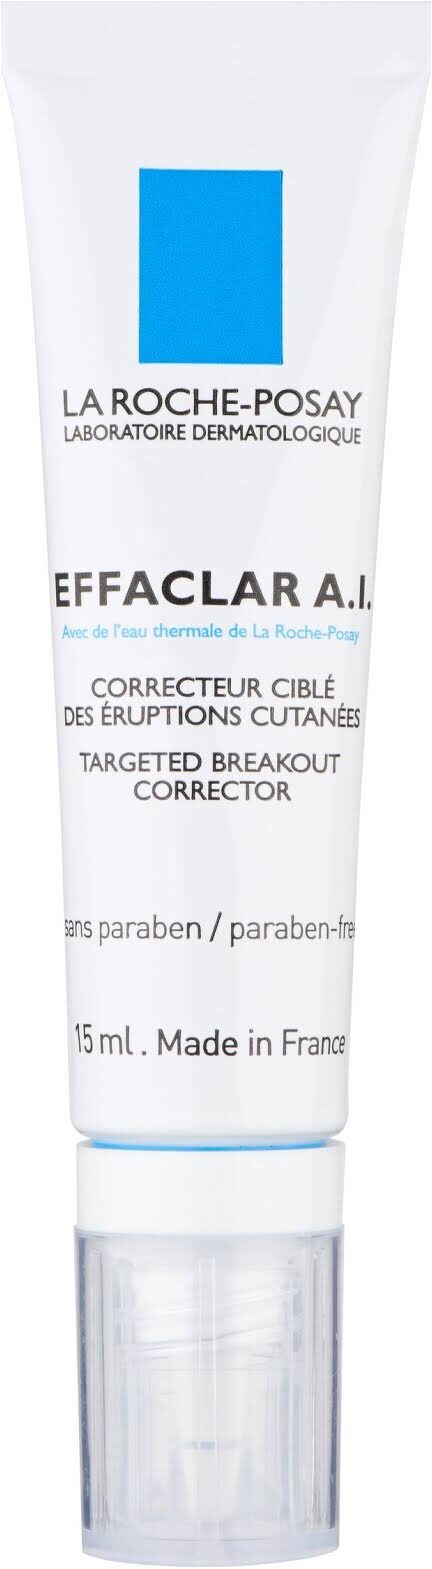 effaclar - Product - fr